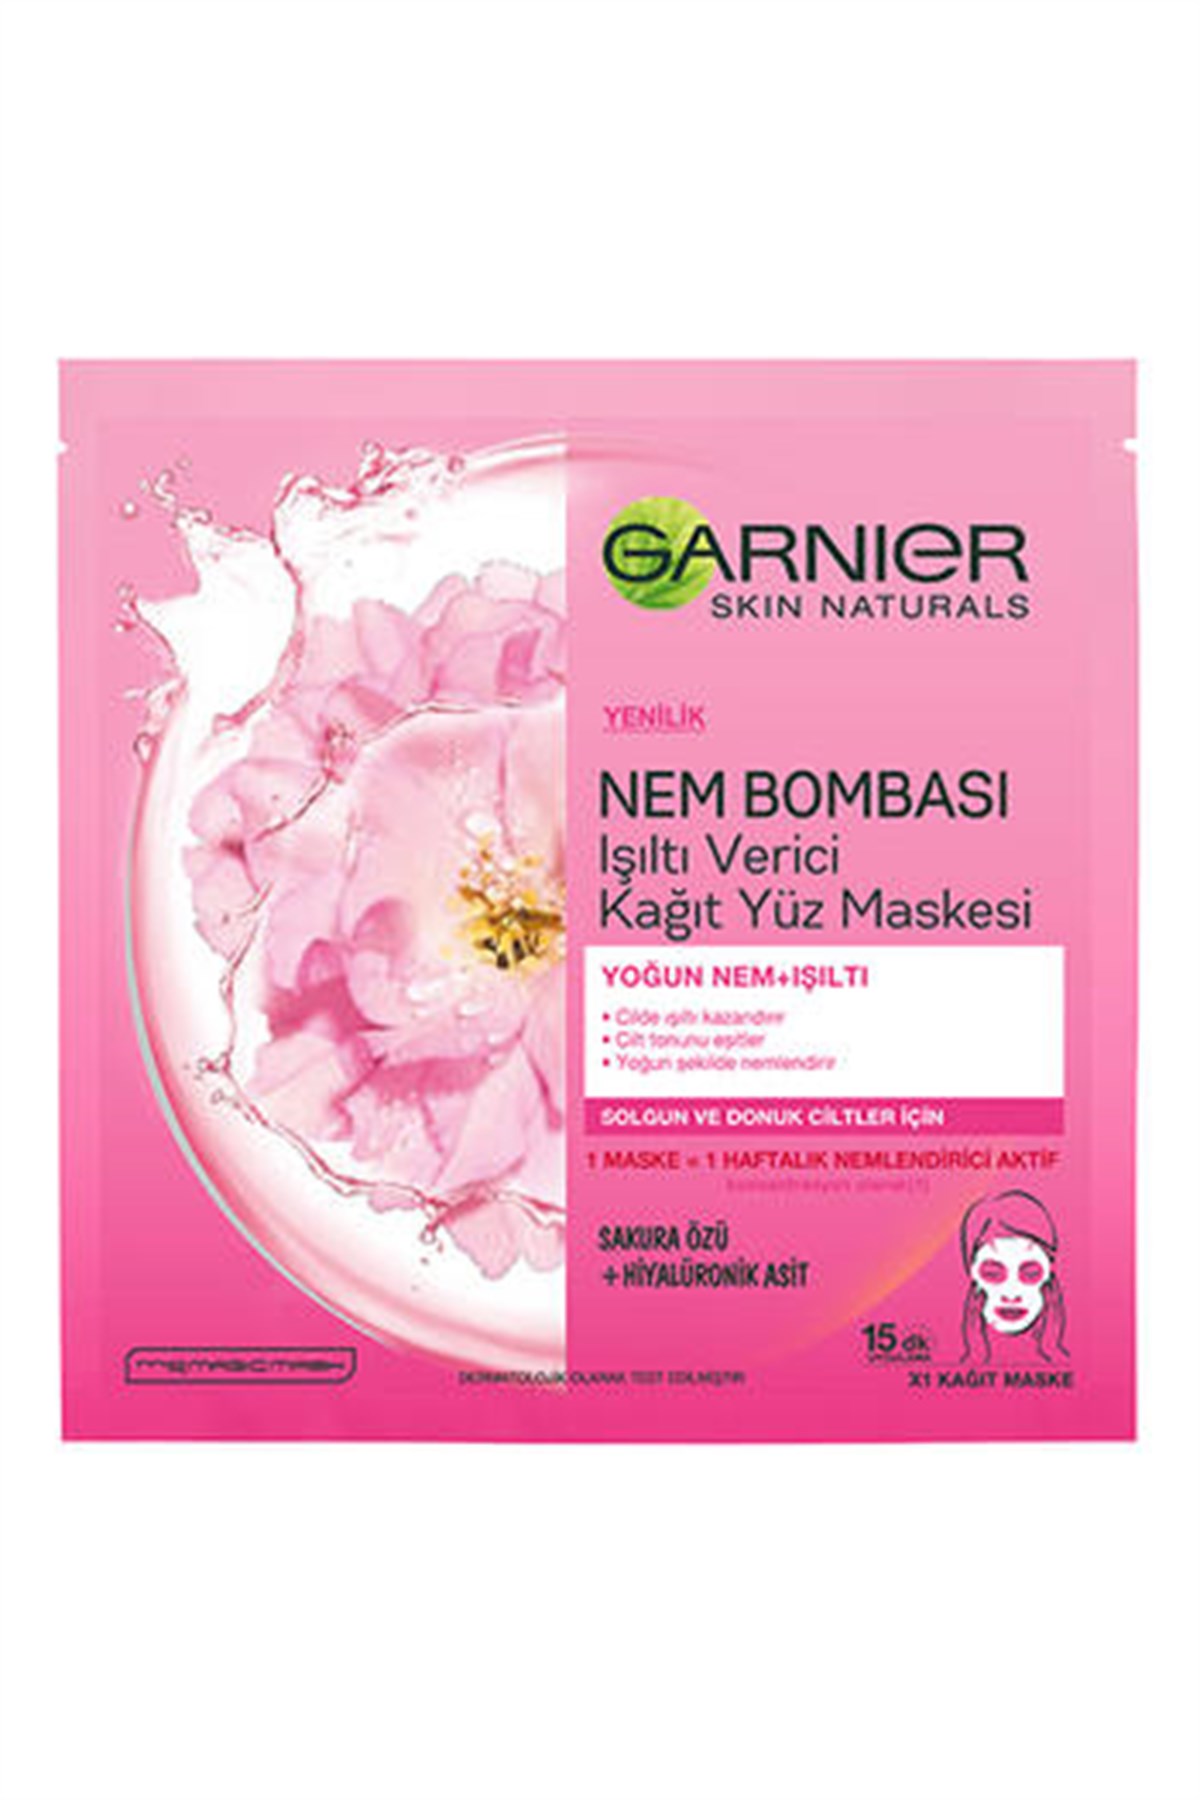 Garnier Kağıt Yüz Maskesi Nem Bombası Işıltı Verici 32 GR Solgun Ve Donuk  Ciltler | Ehersey.com